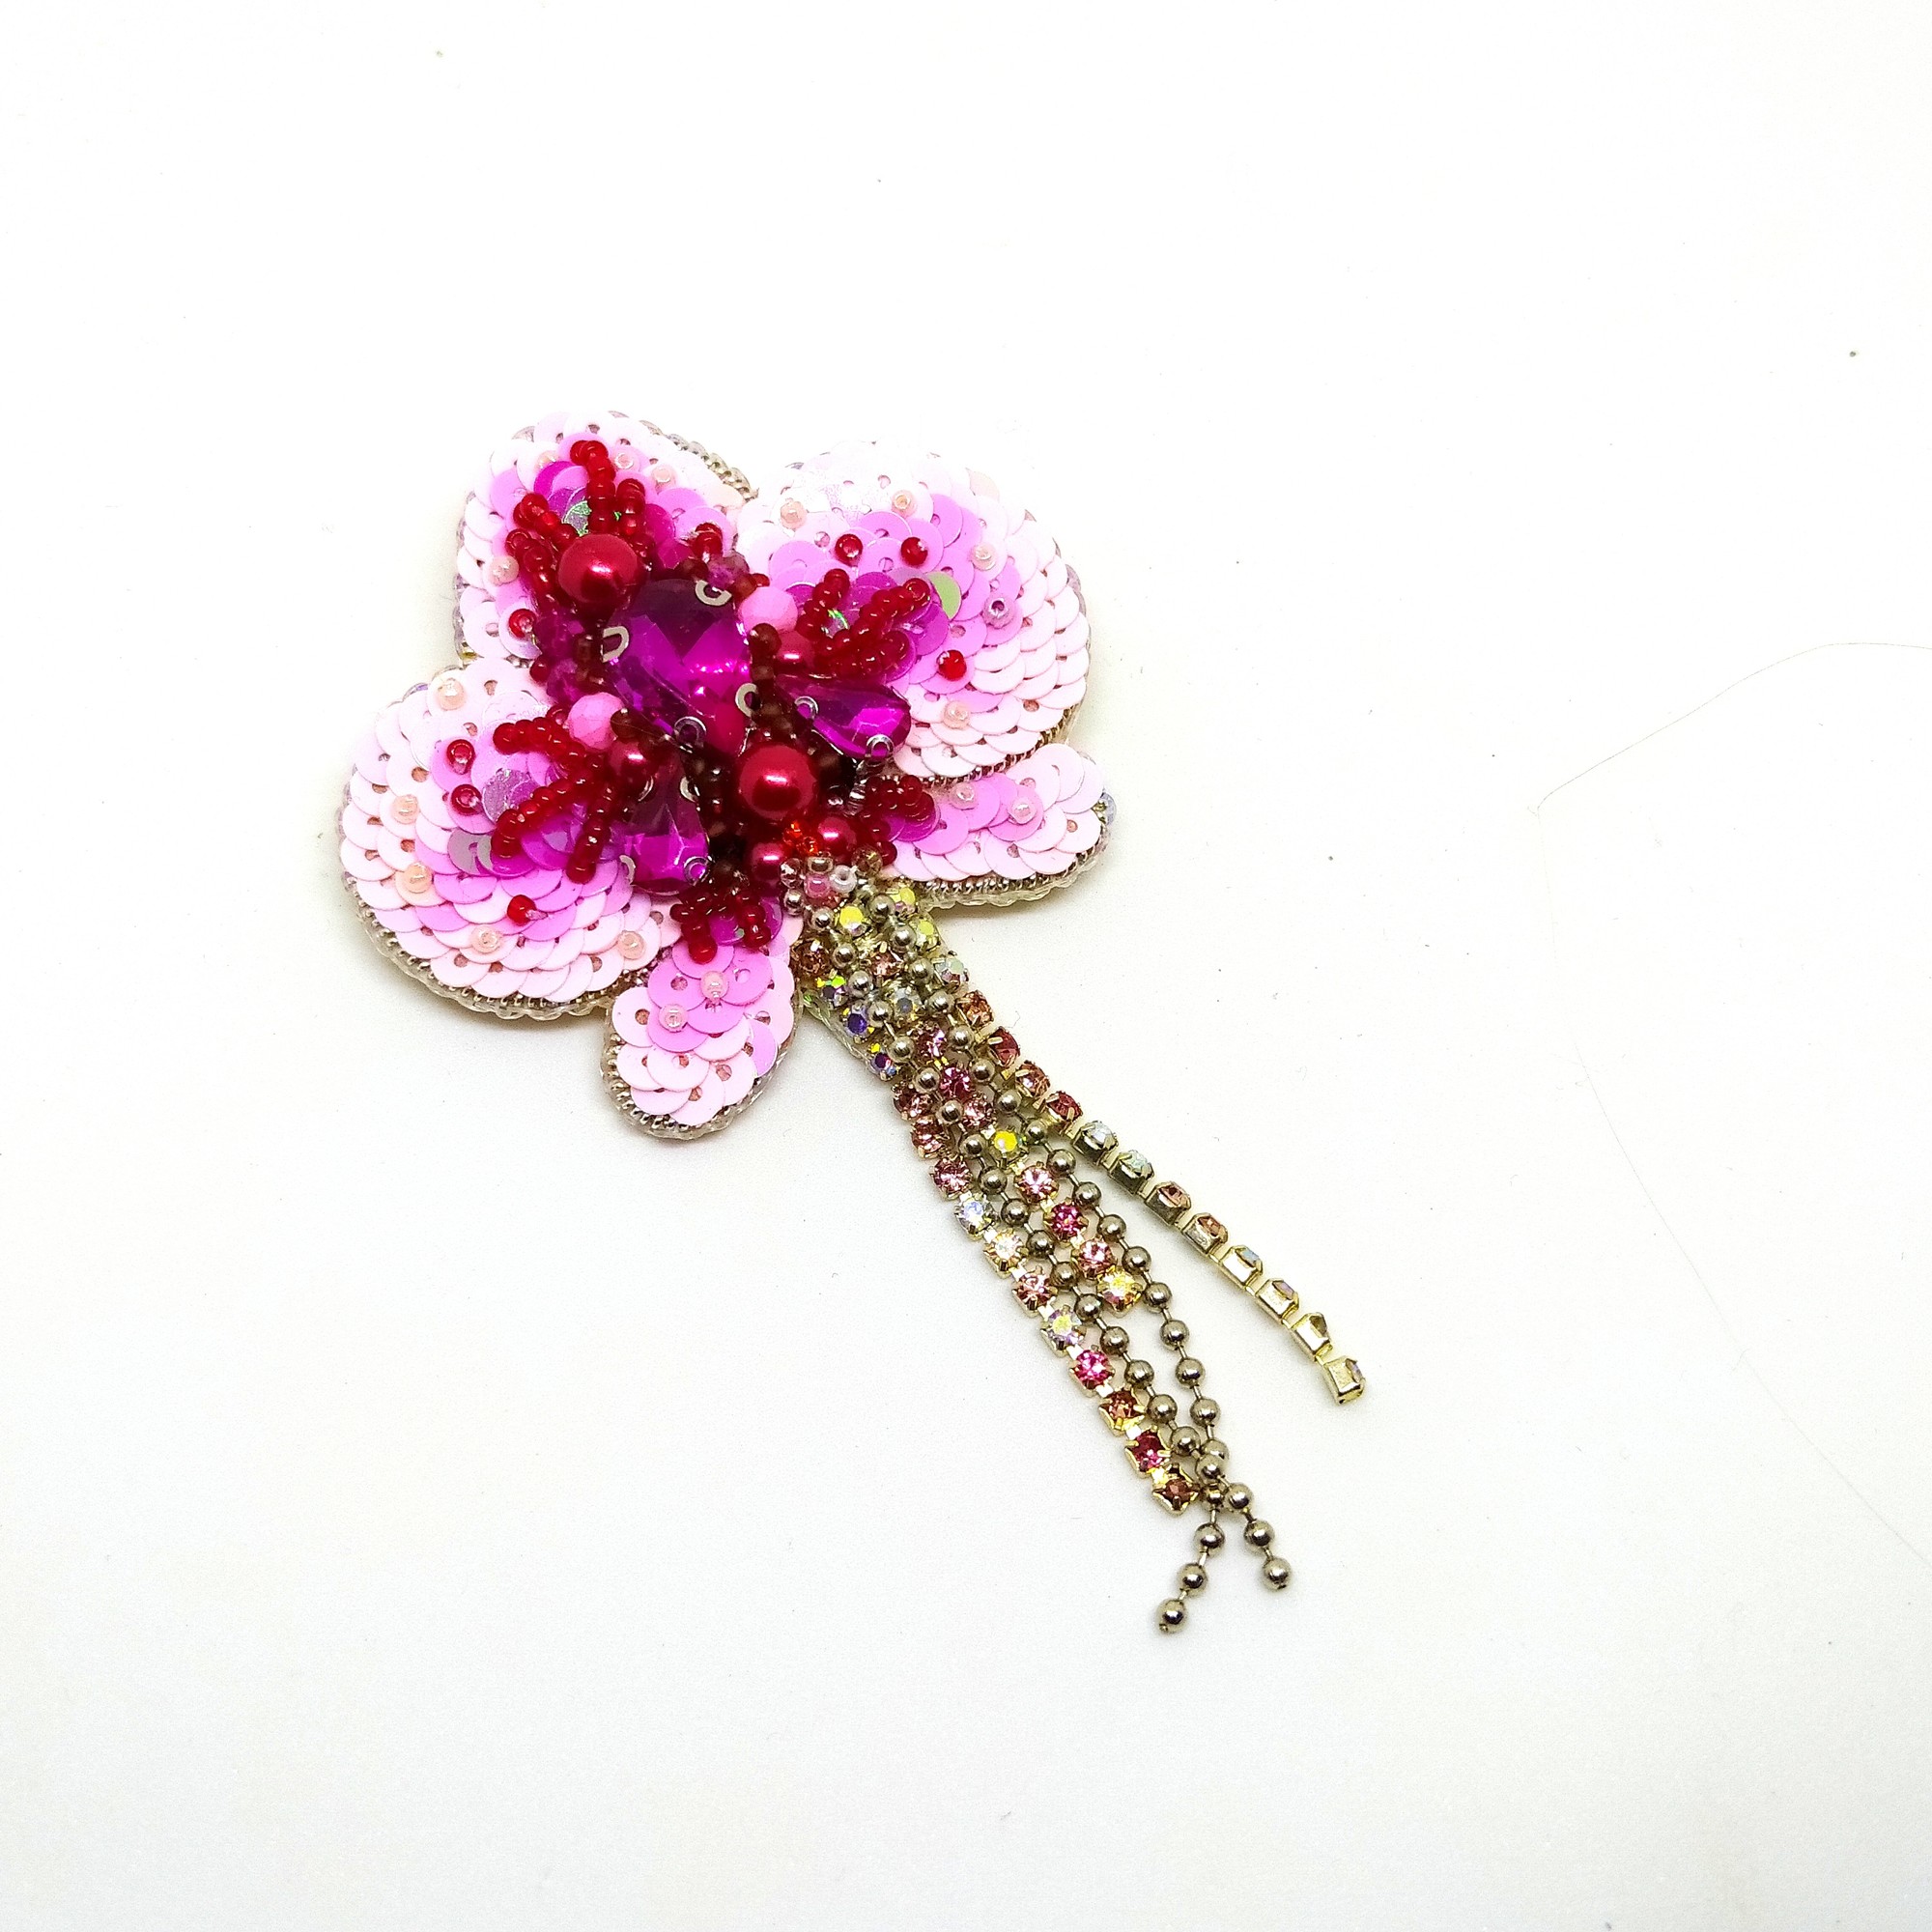 Handmade brooch "Orchid"